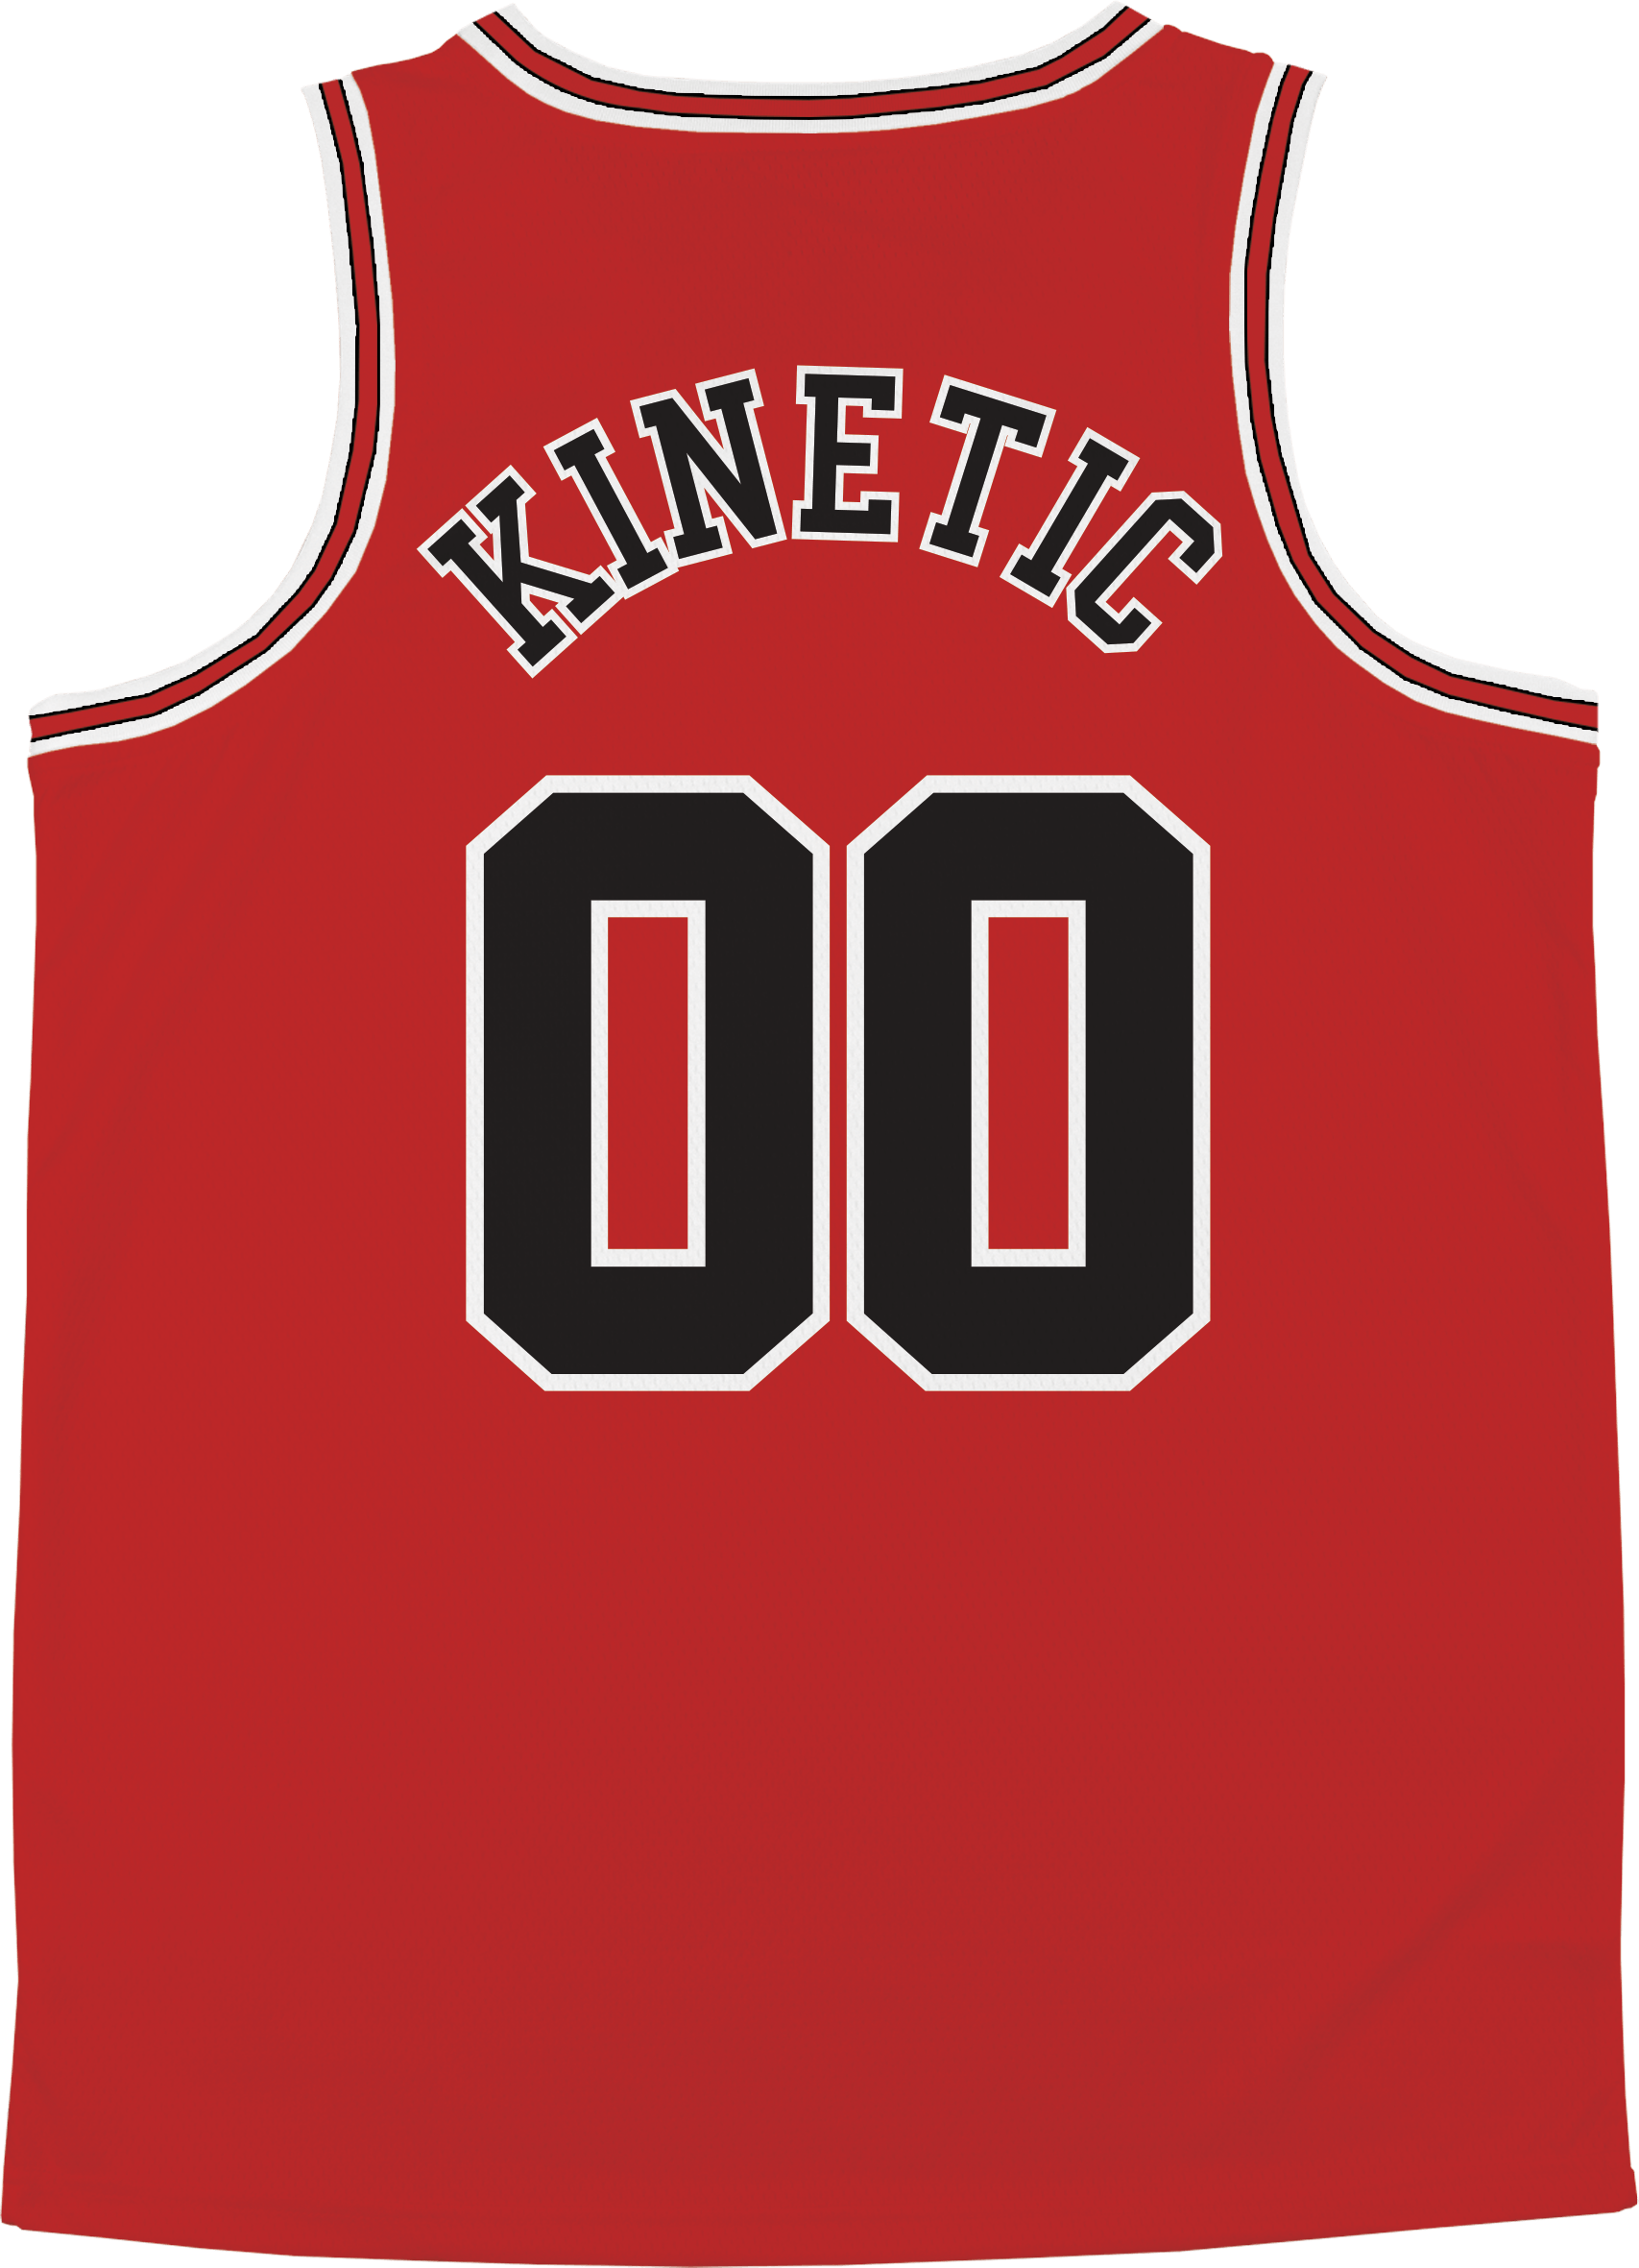 Kappa Alpha Theta - Big Red Basketball Jersey - Kinetic Society